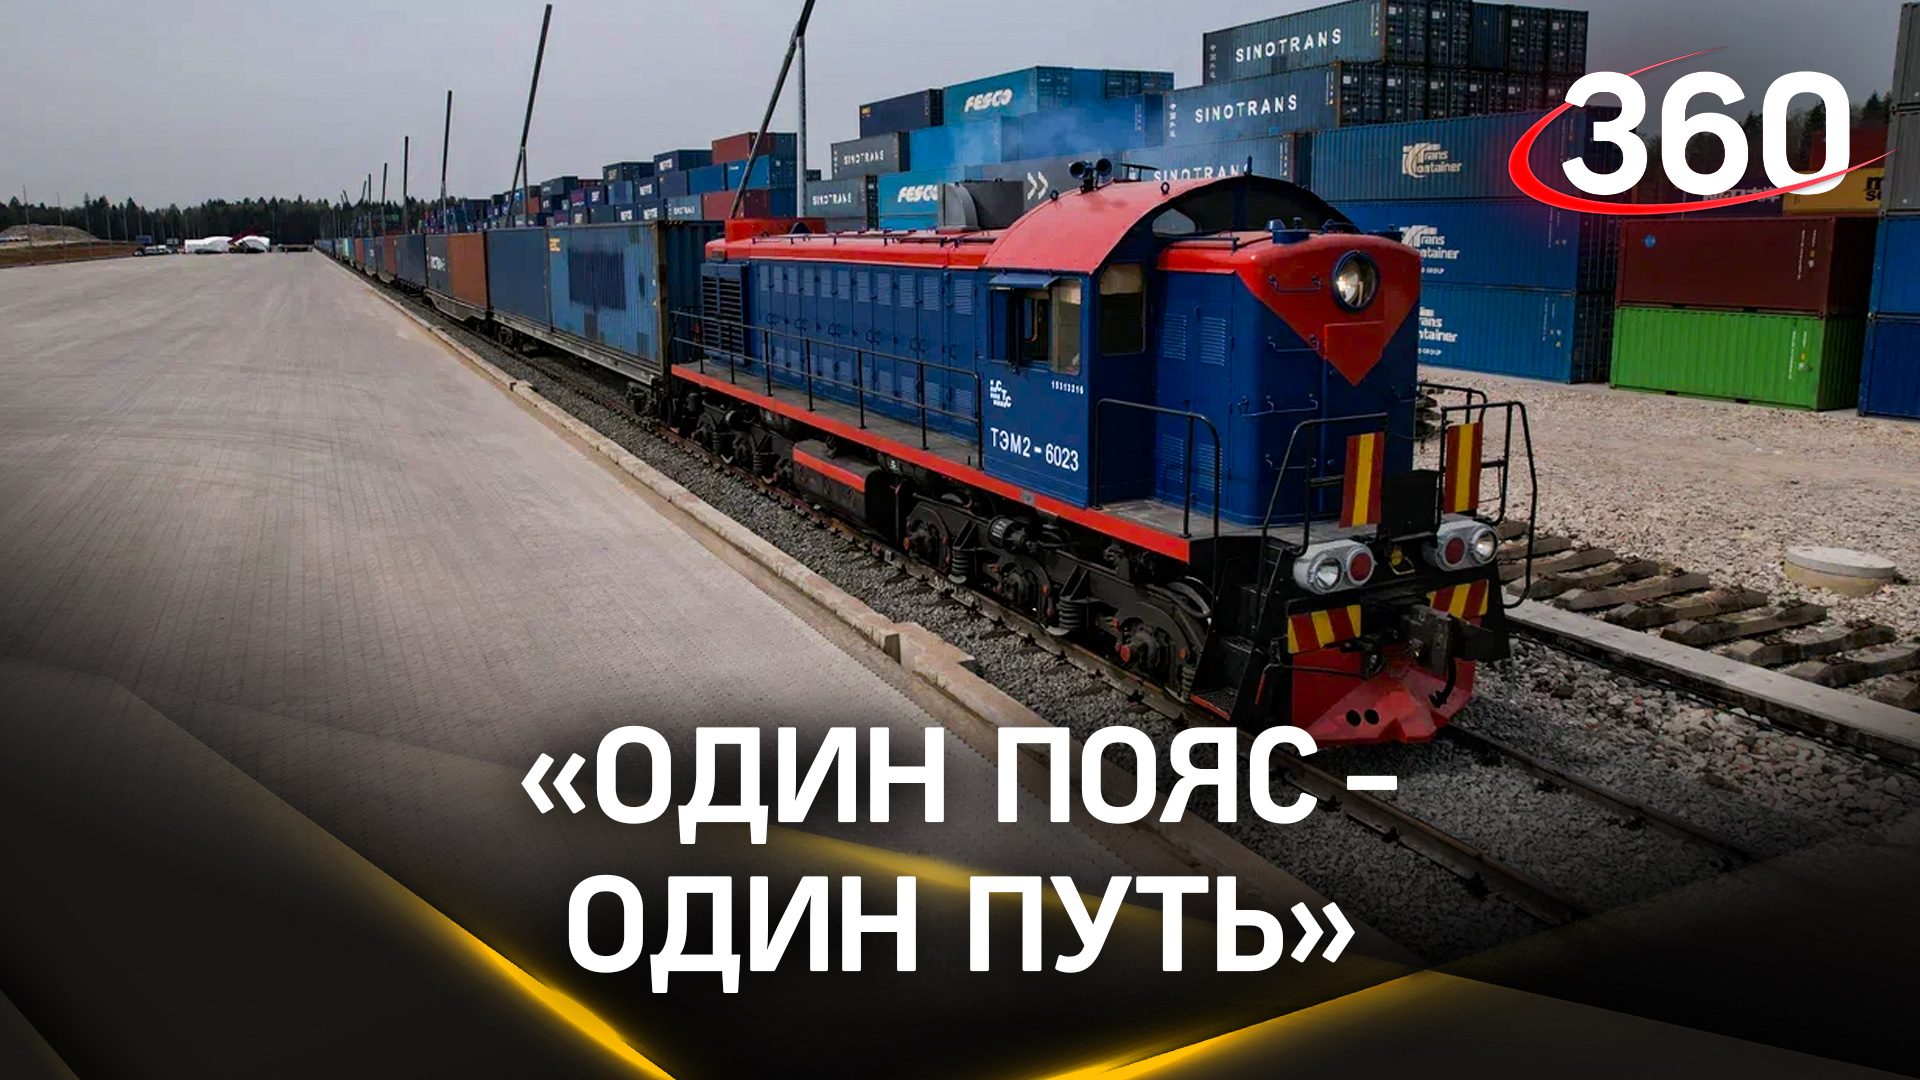 Москва, Пекин и Астана создадут совместный транспортный узел в Подмосковье